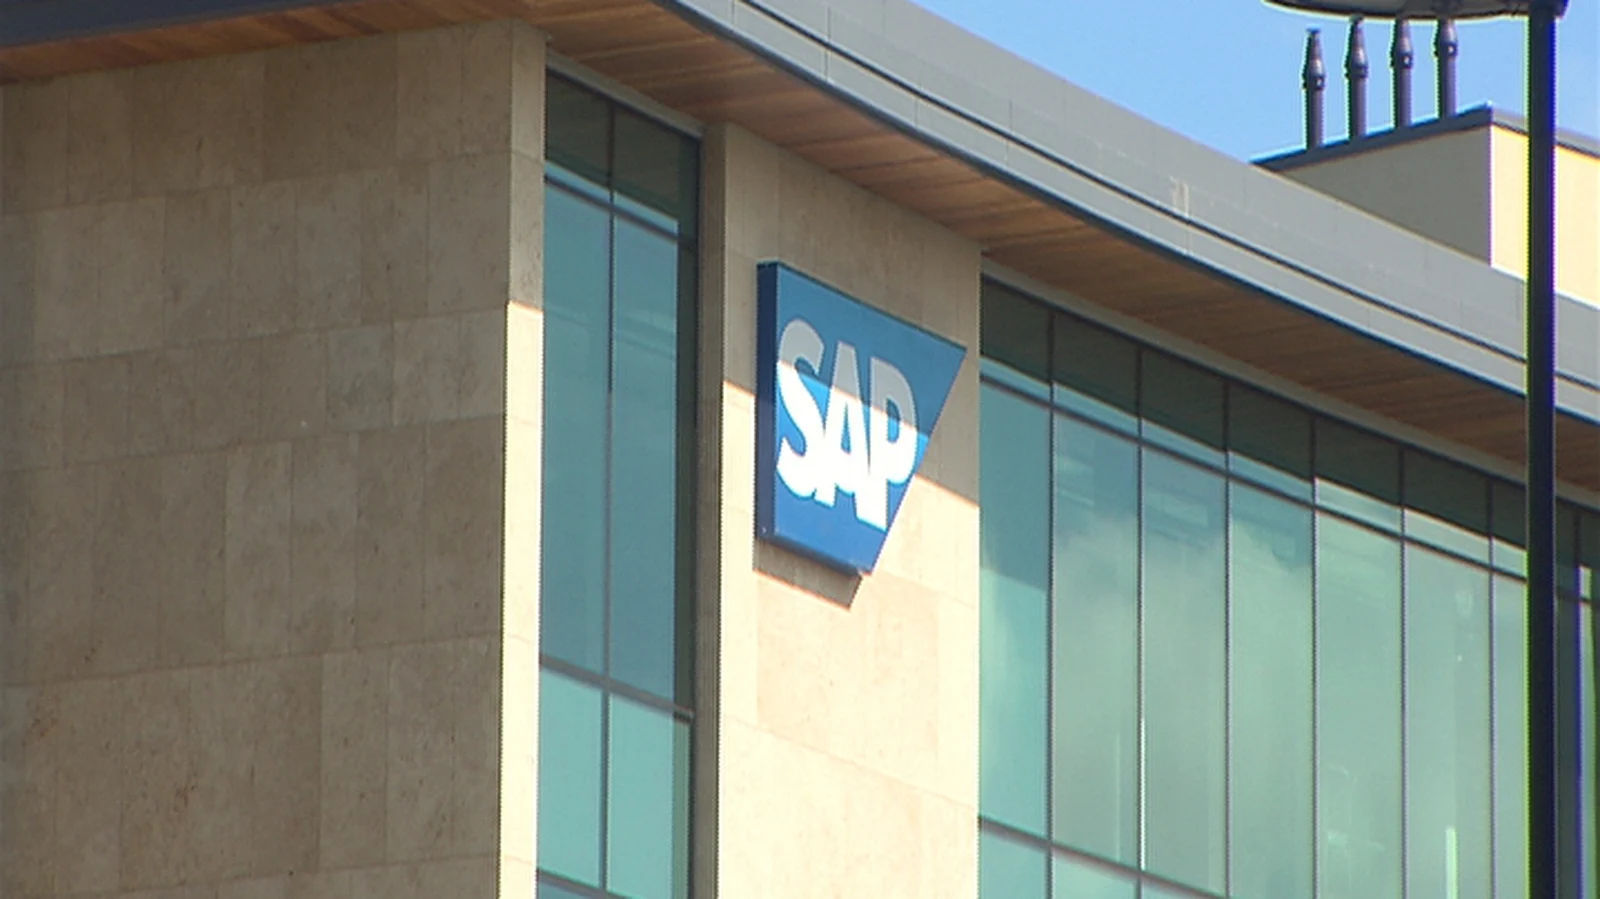 Kantor pusat perusahaan perangkat lunak SAP.